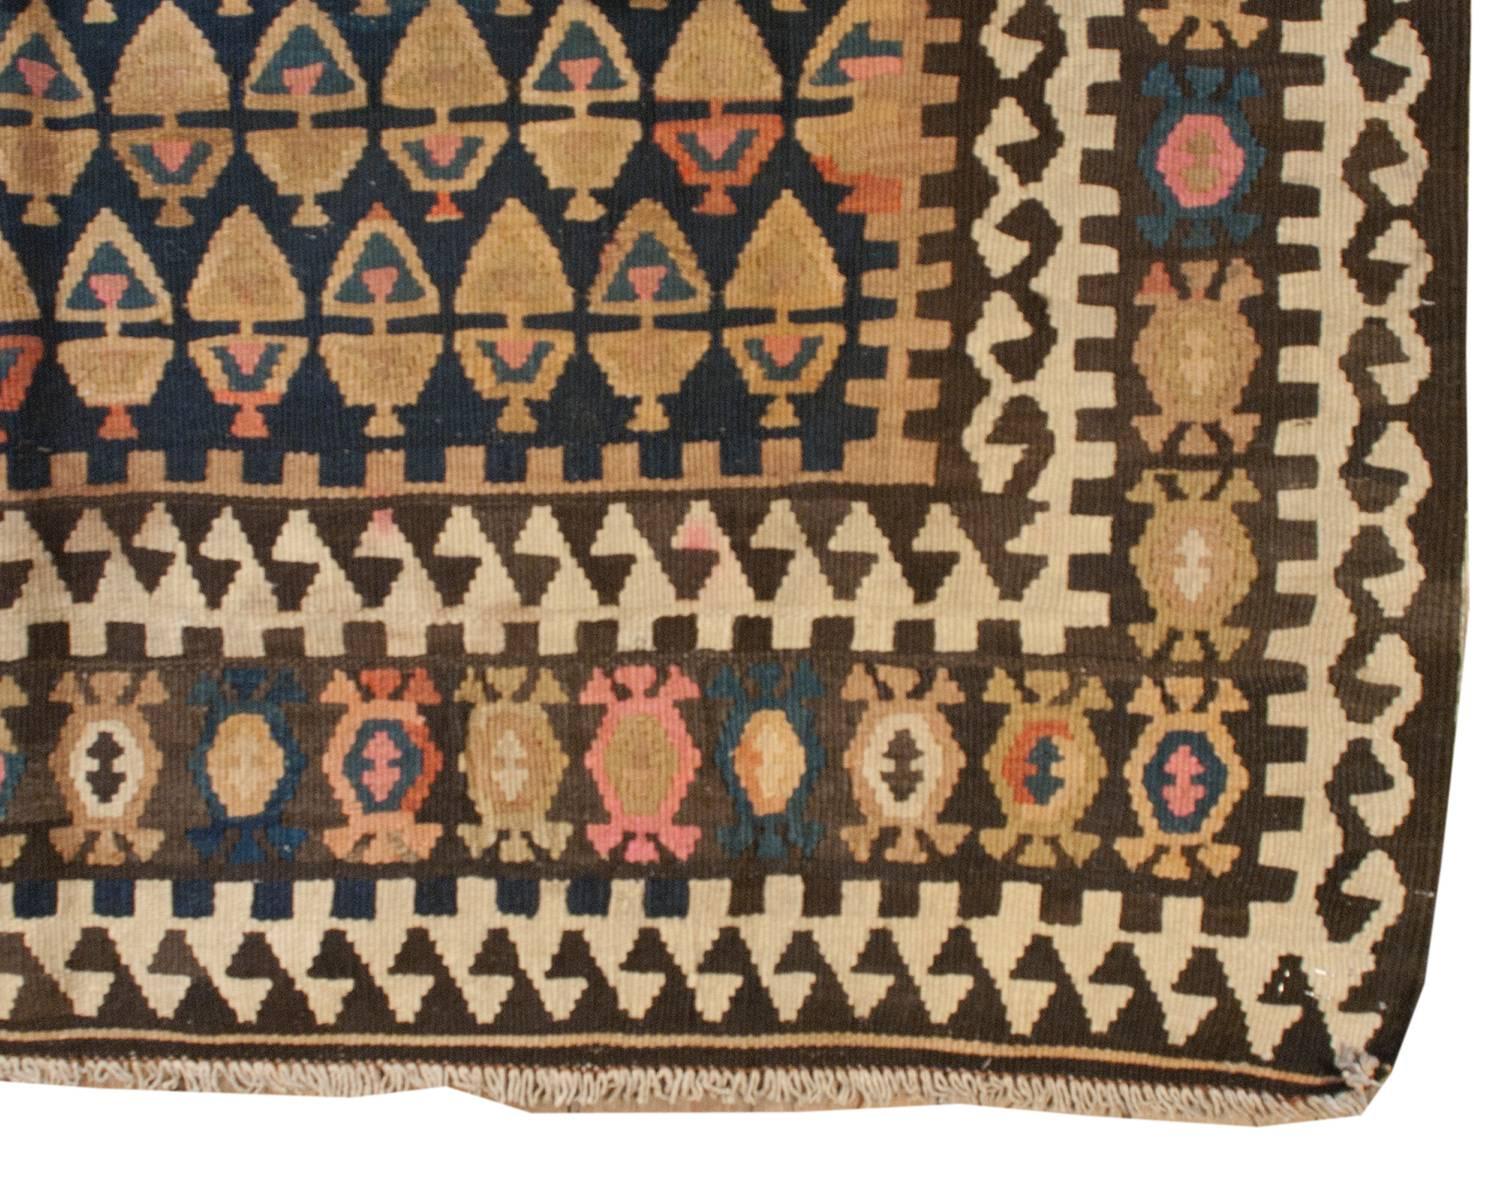 Un inhabituel chemin de table en veramin Kilim persan du début du 20e siècle avec un motif d'arbre de vie multicolore, presque géométrique, tissé de manière complexe sur un fond indigo. La bordure est audacieuse, avec des formes de vigne stylisées